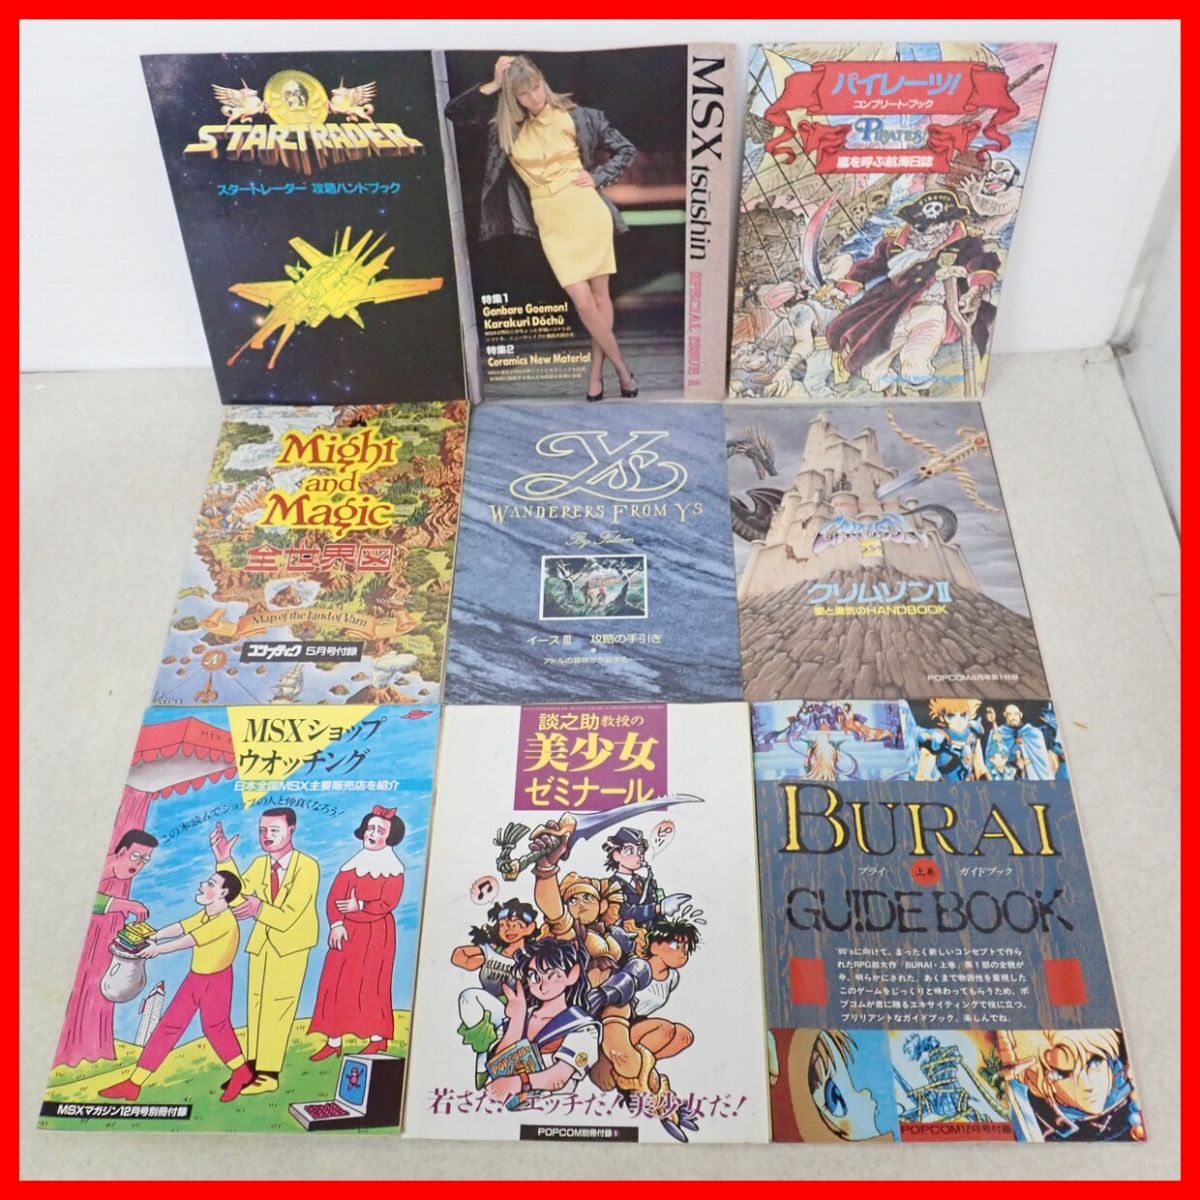 * ежемесячный логин /POPCOM/ comp чай k/ Famicom сообщение / Mega Drive FAN/../MSX журнал и т.п. игра /PC серия журнал дополнение совместно много комплект [20